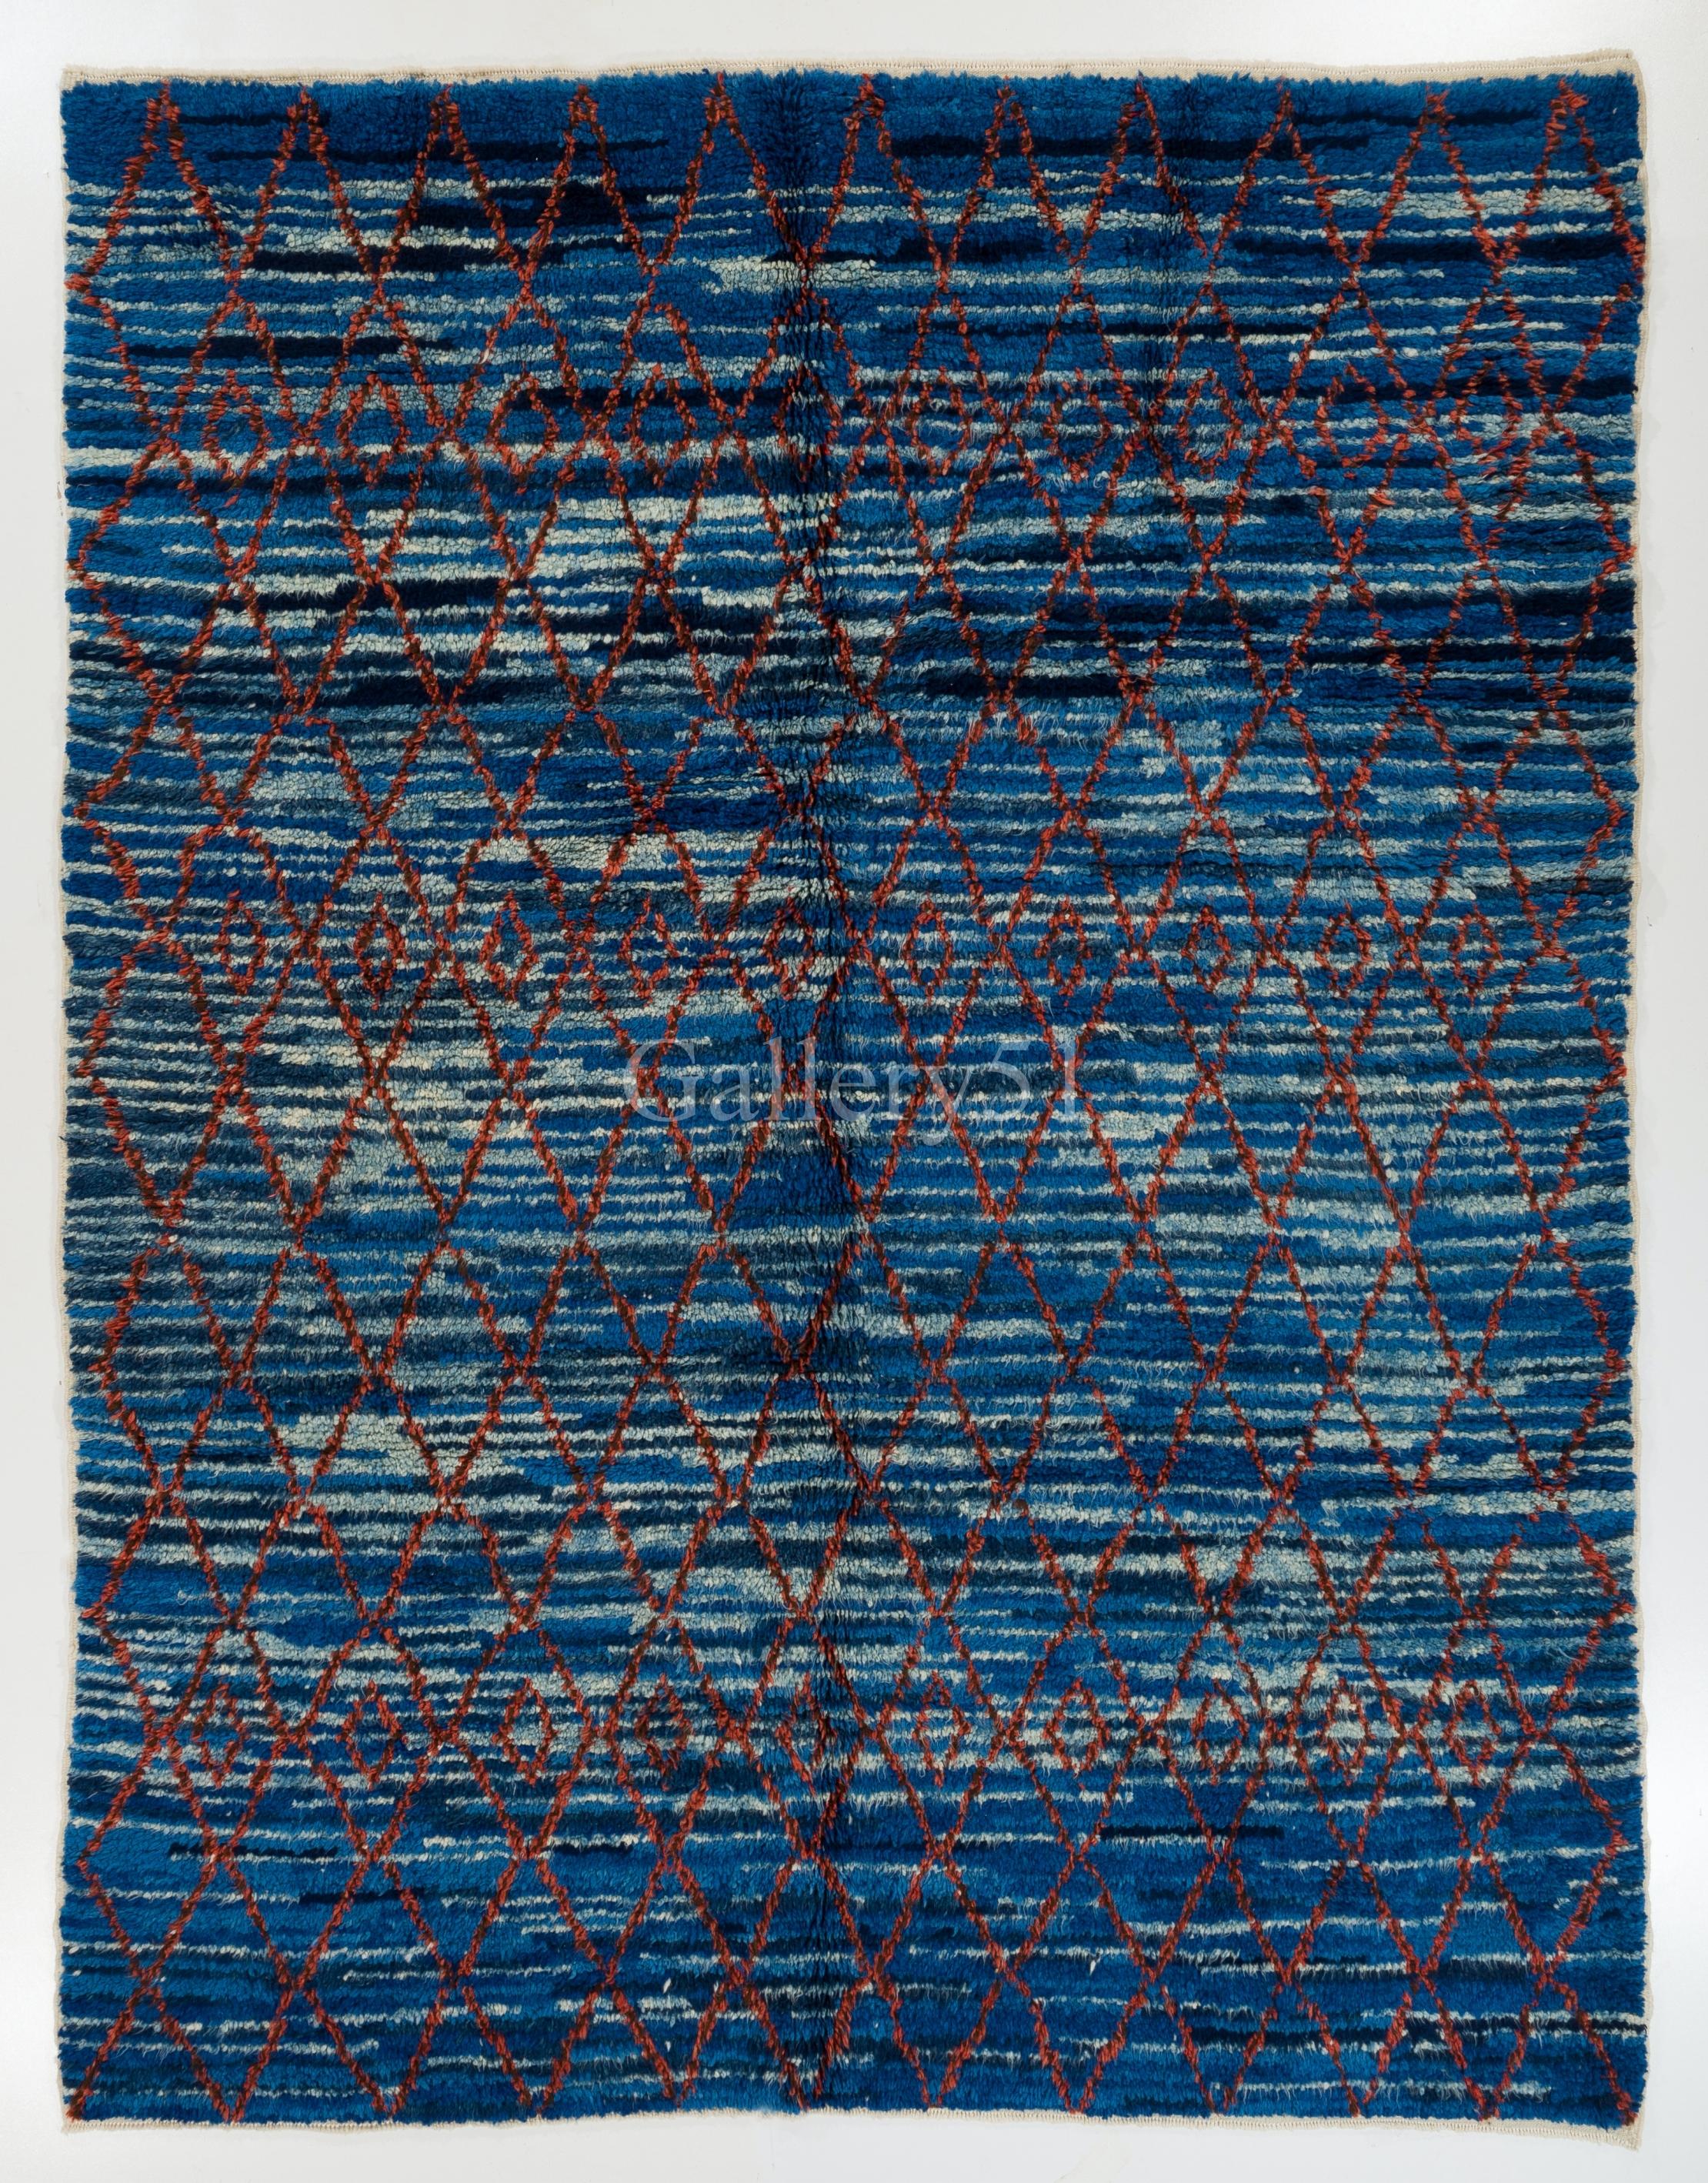 Ein moderner handgeknüpfter Teppich aus organischer Wolle mit marokkanischem Design, der ins Auge fällt. Es schimmert in dunkleren und helleren Blautönen mit einem roten Netz darüber.

Dieser wunderschön gestaltete Plüschteppich besteht vollständig